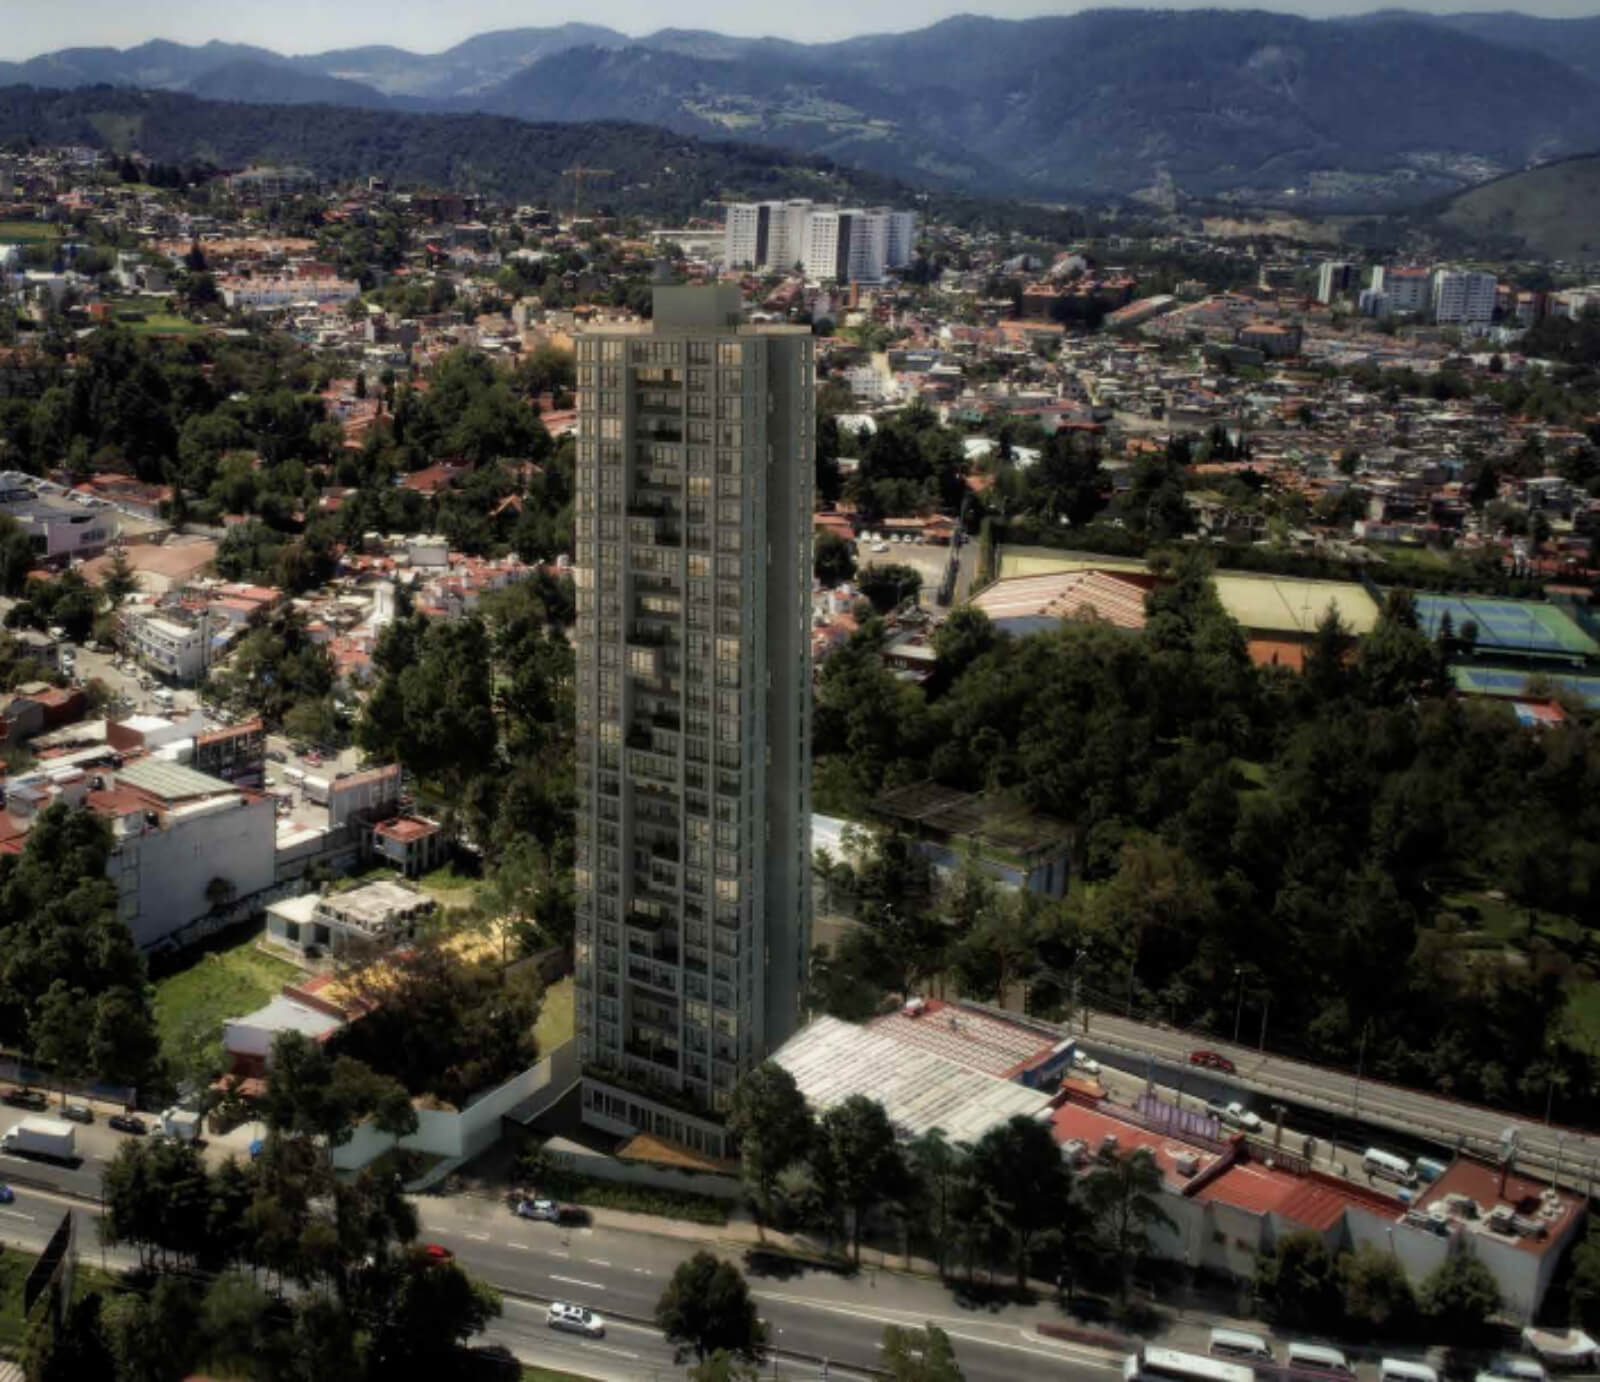 Departamento con 5m2 de balcon, alberca con carril de nado, gimnasio, area de juegos, areas verdes, en venta en Santa Fe, Ciudad de Mexico.